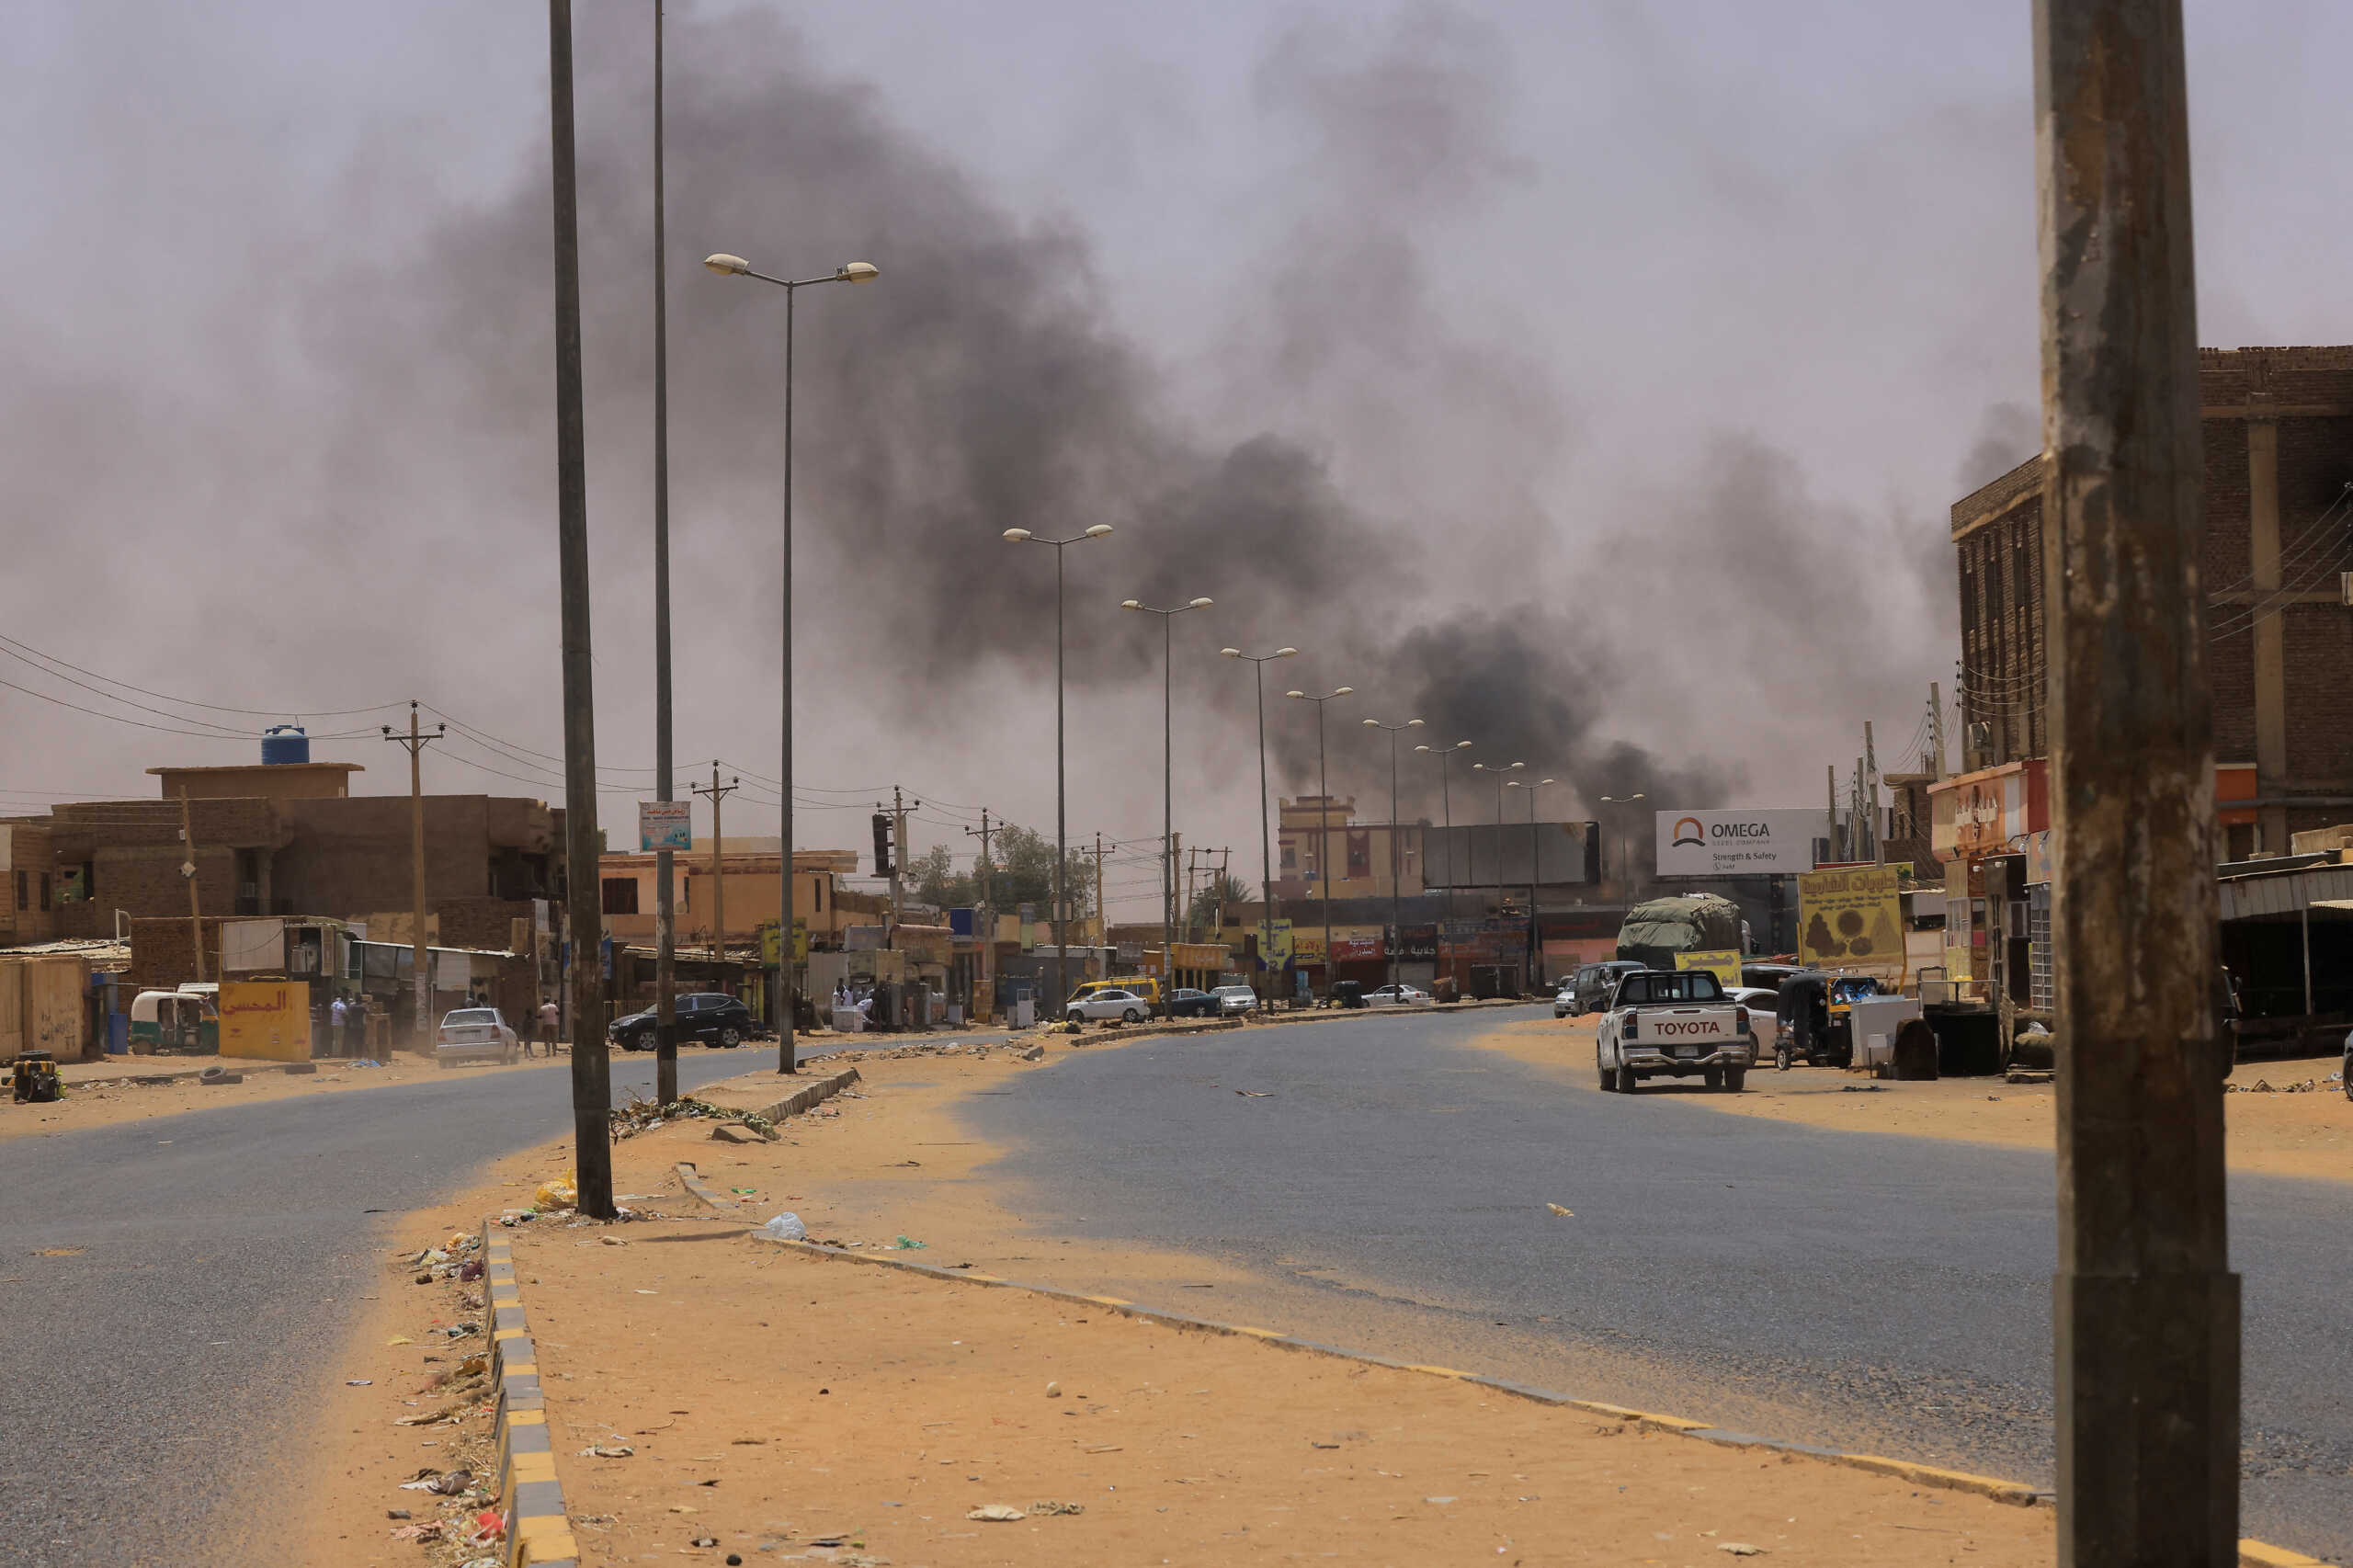 Σουδάν: Στα πόδια τραυματισμένοι οι Έλληνες που χτυπήθηκαν από ρουκέτα – Εγκλωβισμένοι πιστοί στην Μητρόπολη στο Χαρτούμ